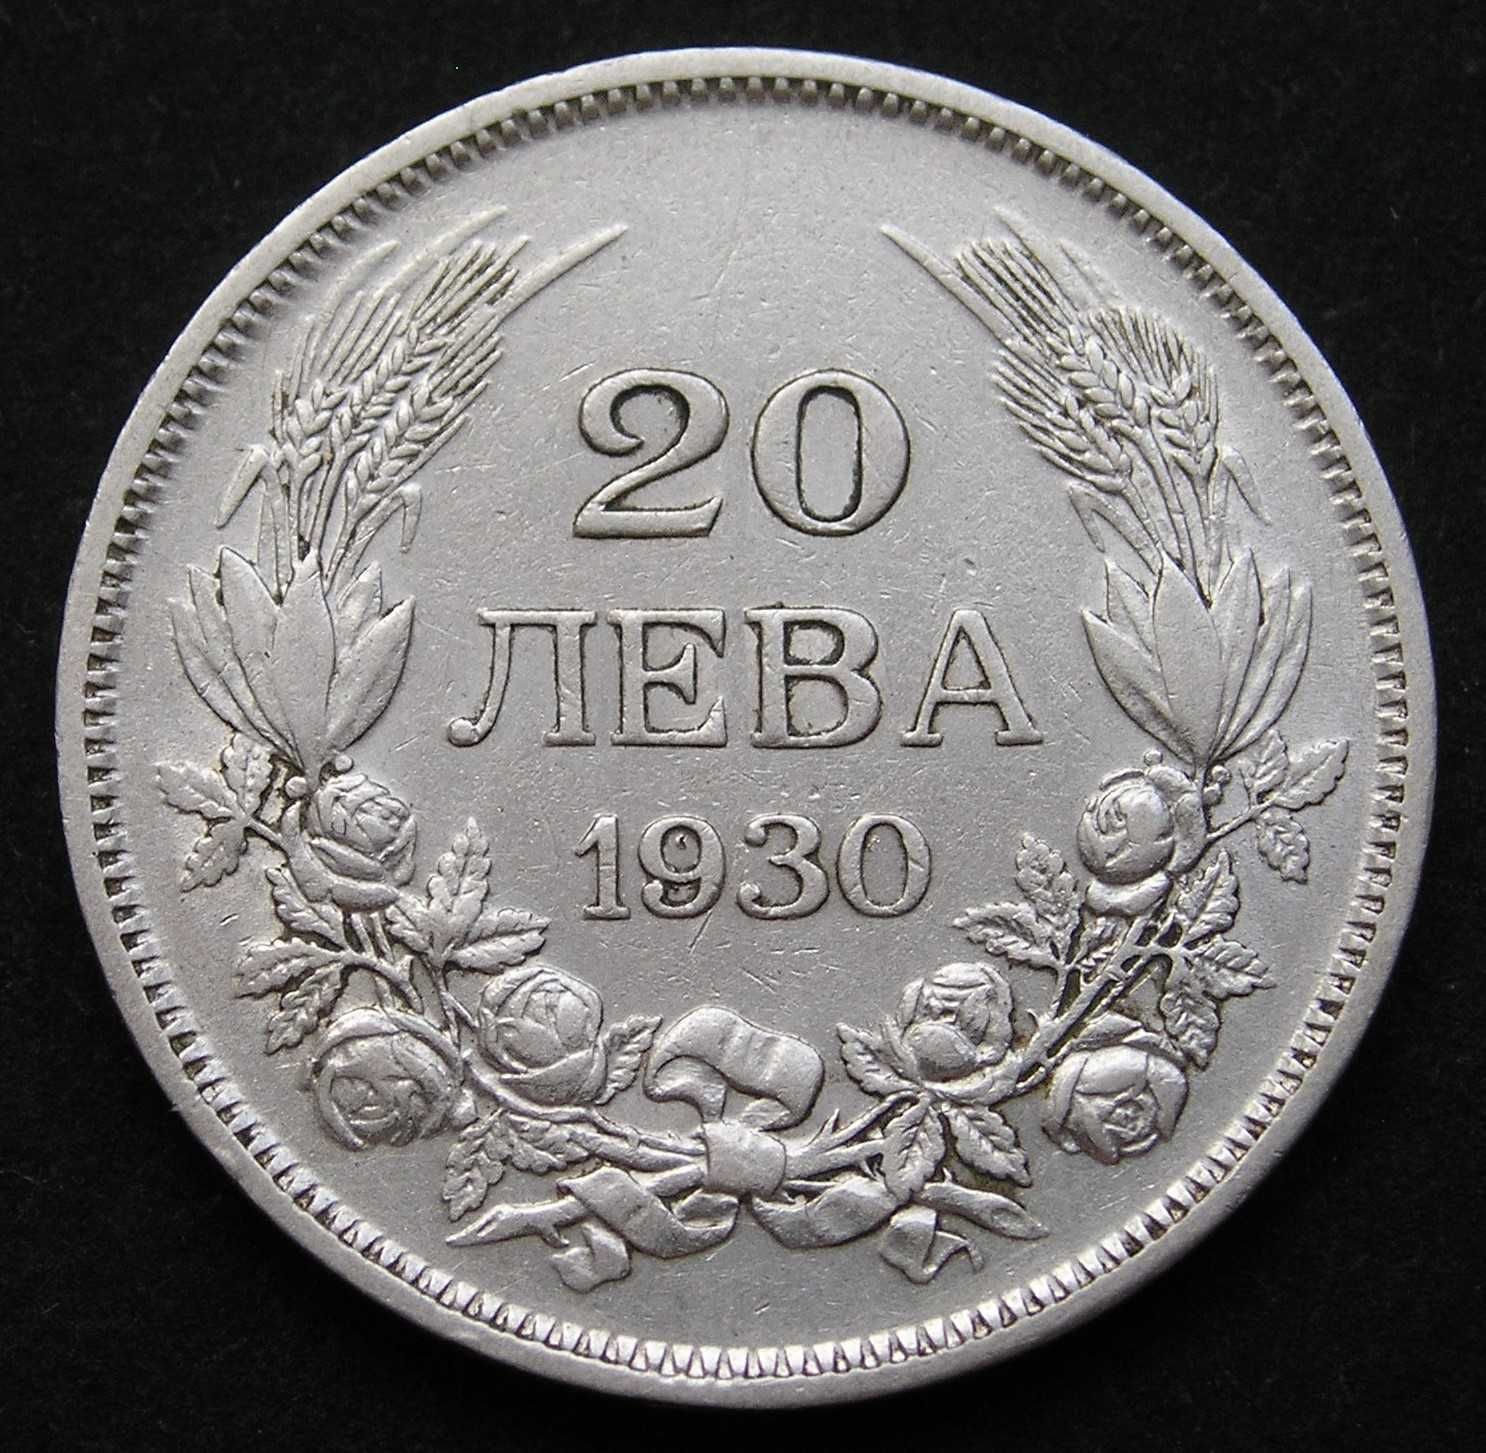 Bułgaria 20 lewa 1930 - srebro